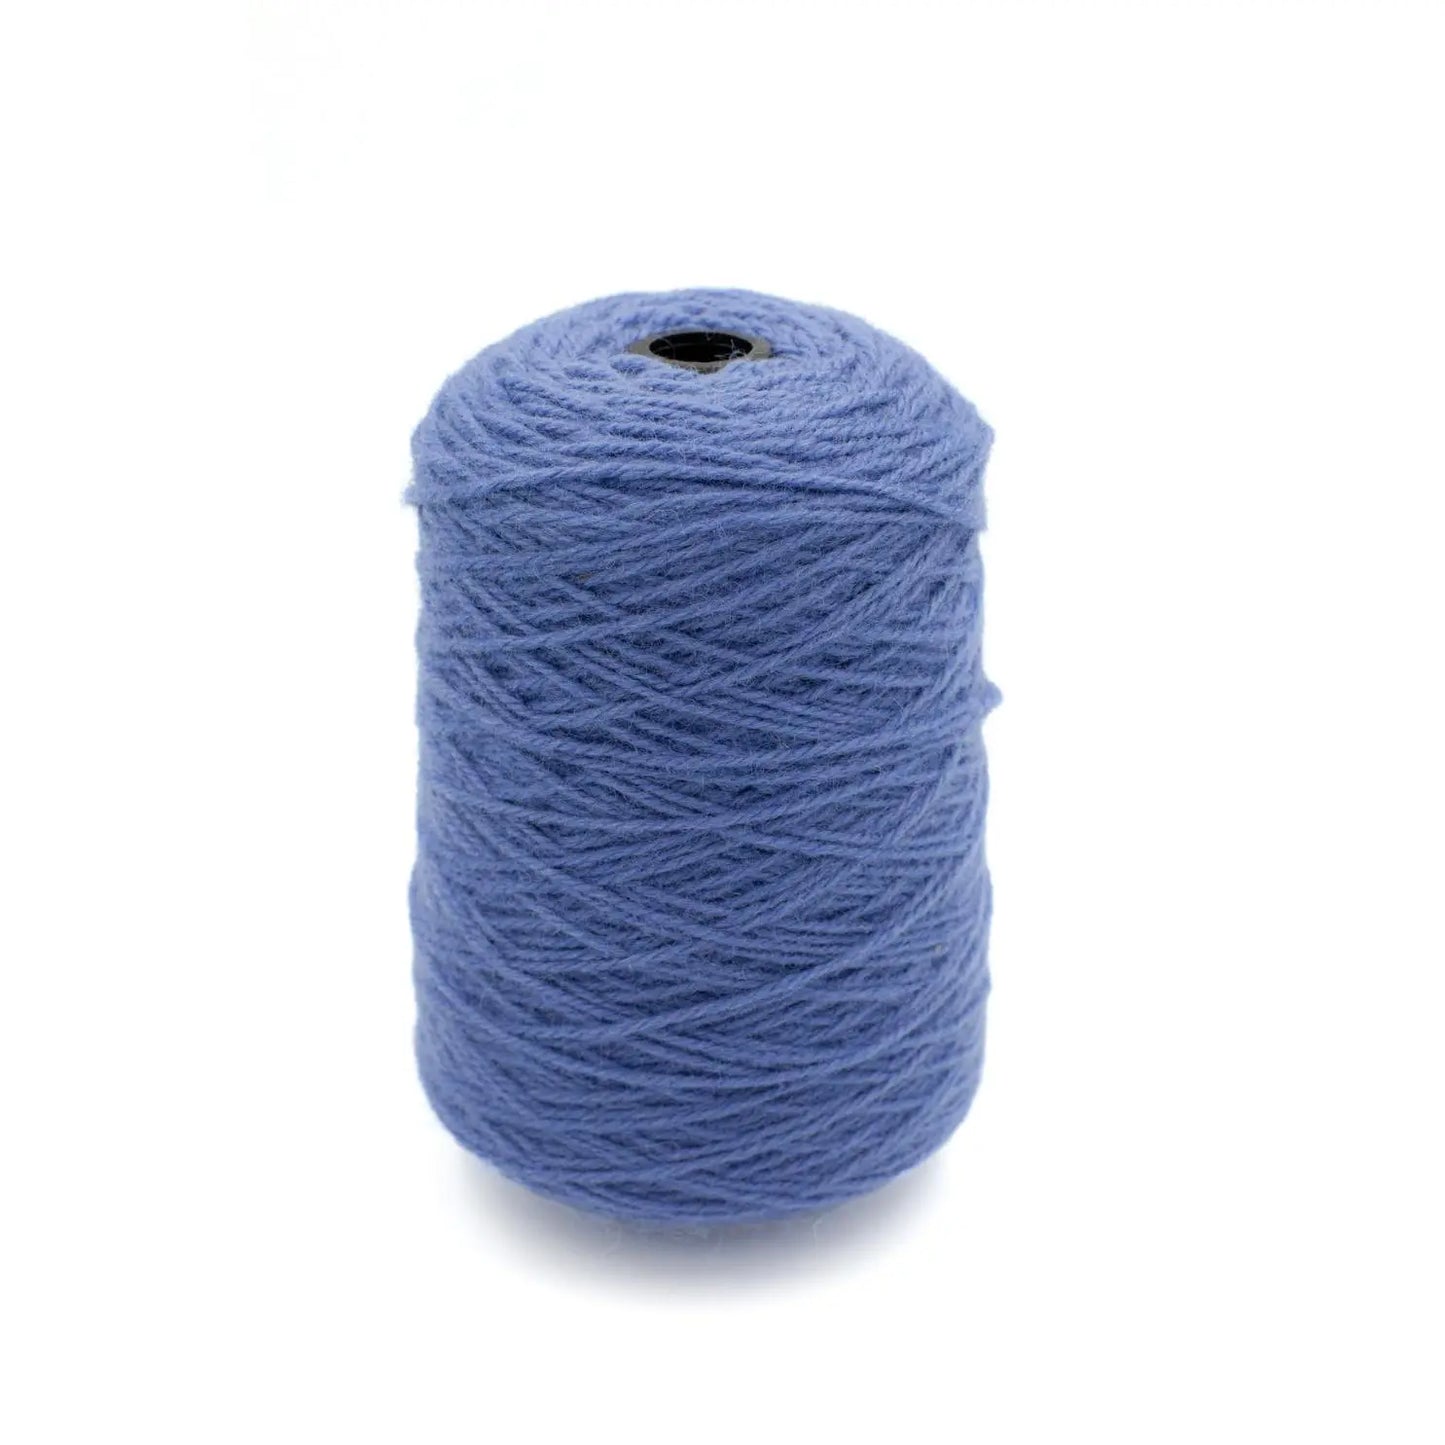 Enameled Blue Wool Thread